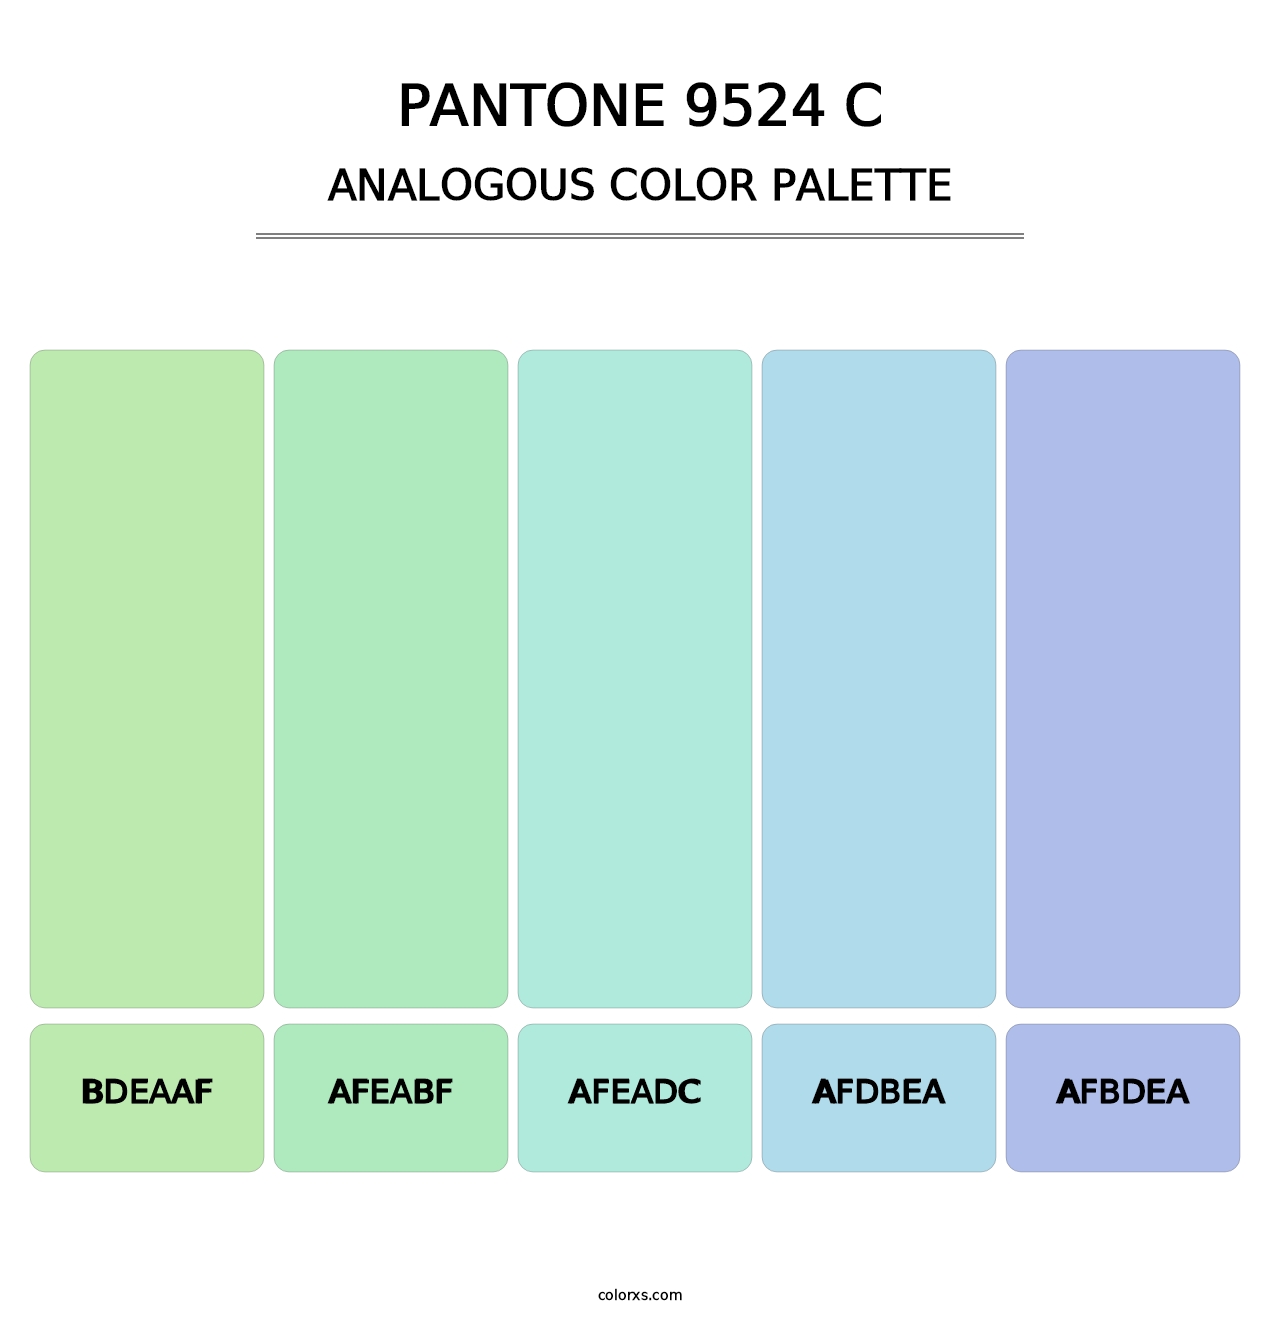 PANTONE 9524 C - Analogous Color Palette